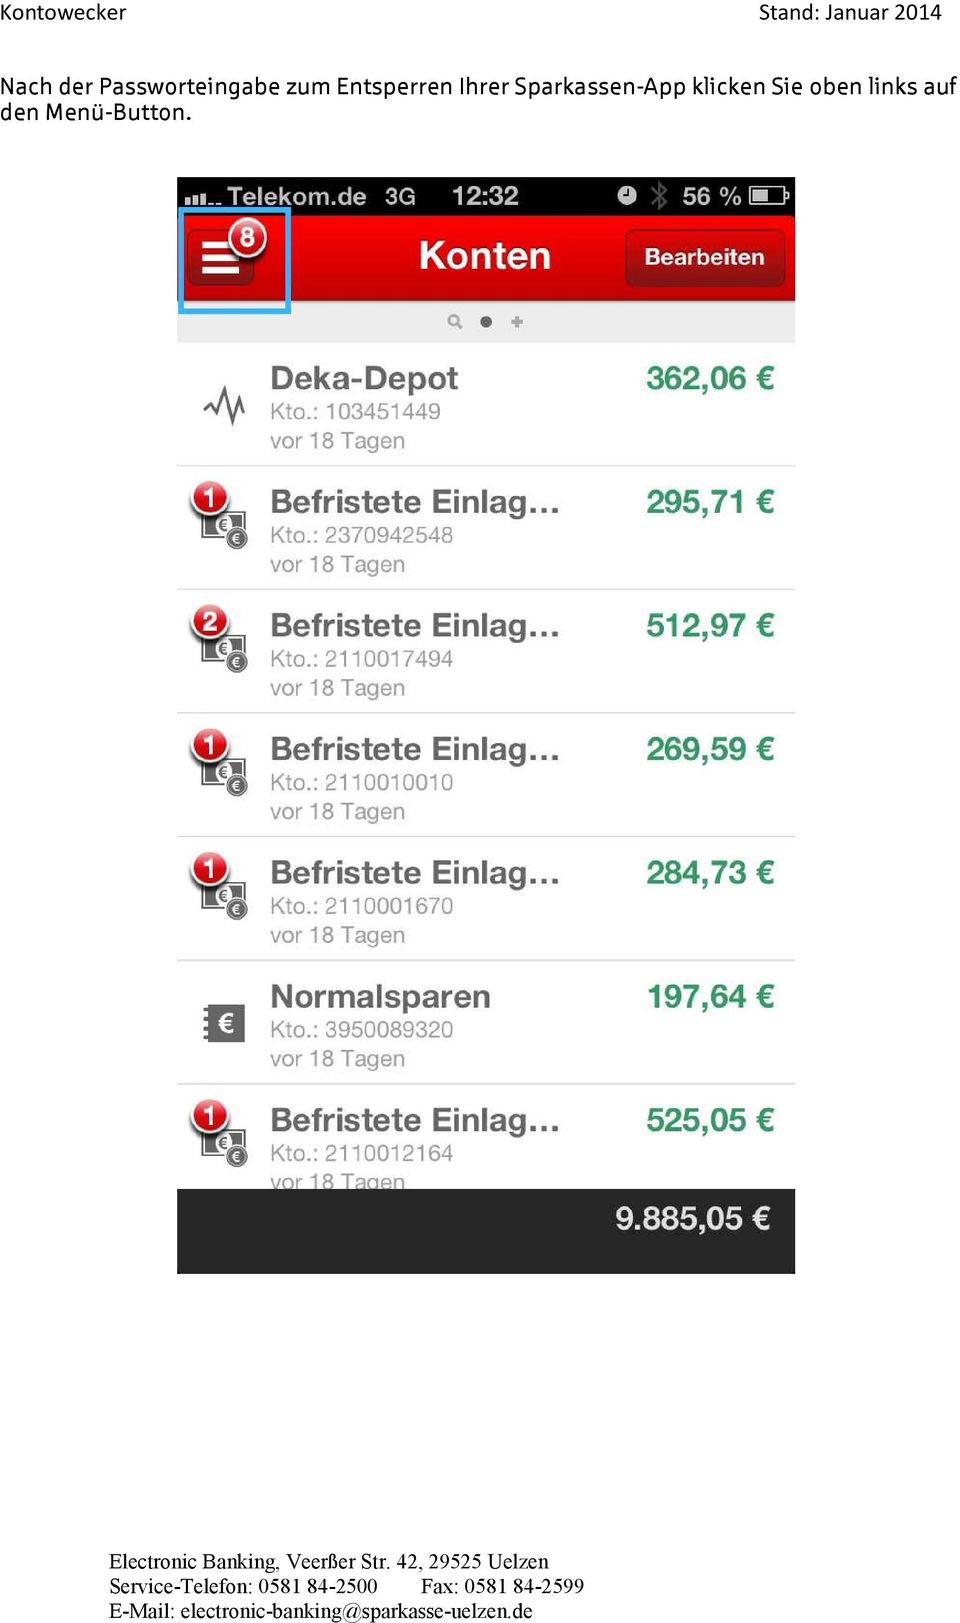 Sparkassen-App klicken